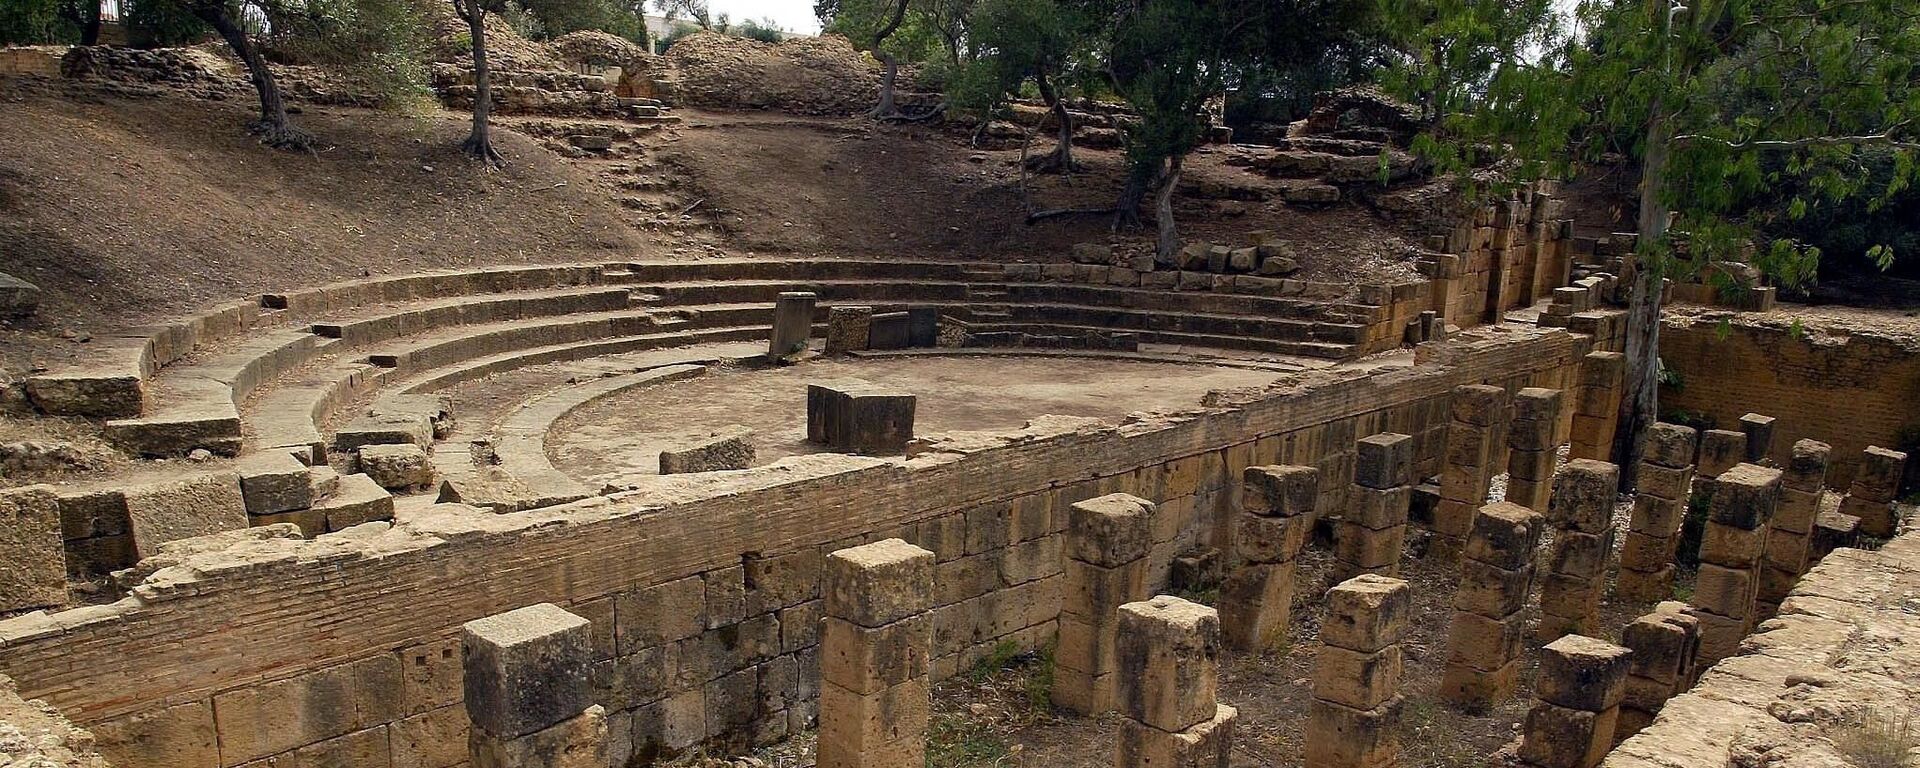 Les ruines de l’amphithéâtre romain du site archéologique de Tipaza, en Algérie. - Sputnik Afrique, 1920, 07.03.2020